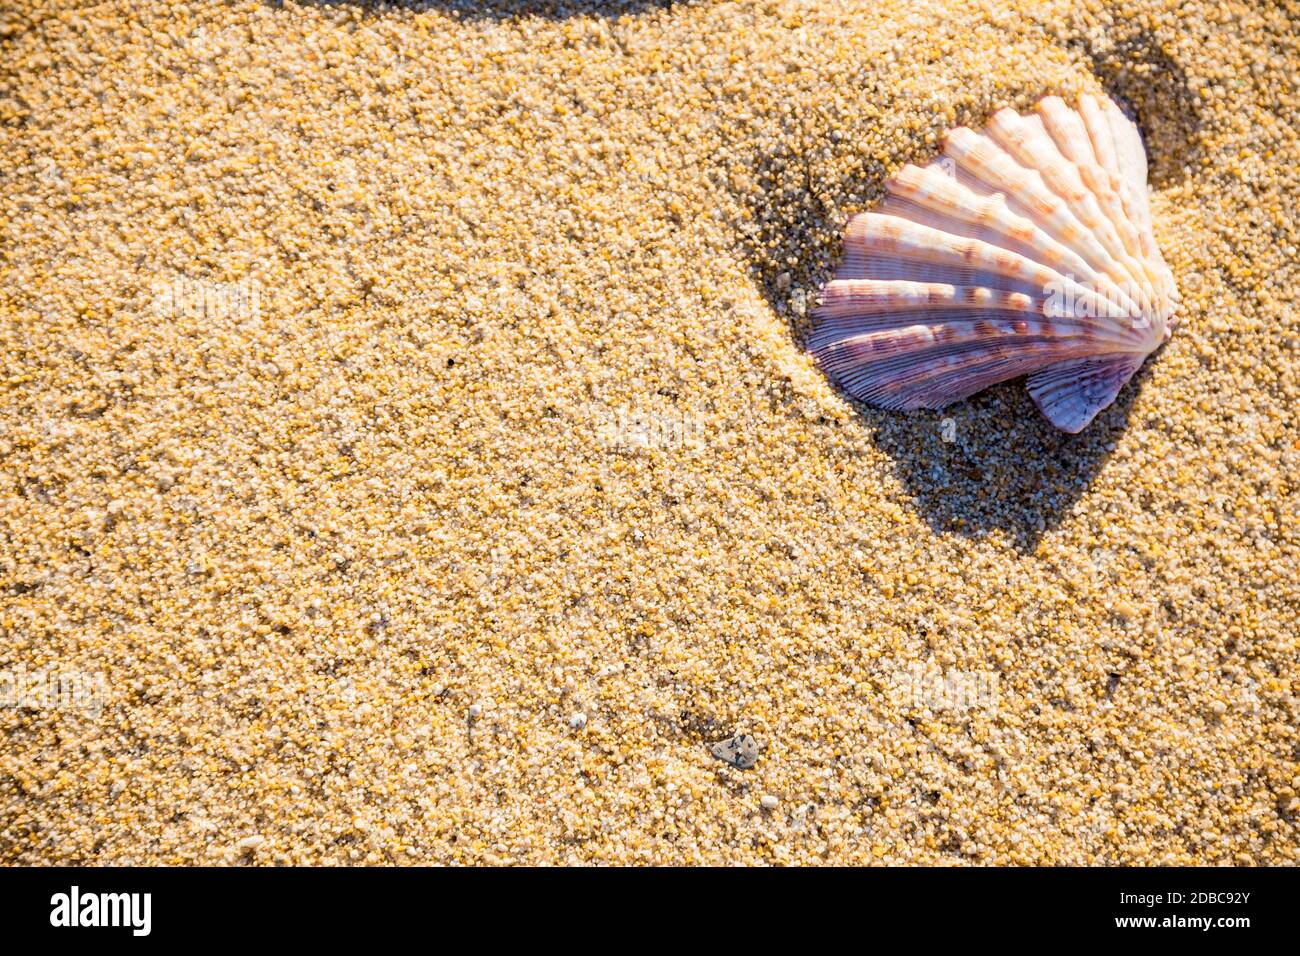 Meeresmuschel auf Sand von oben fotografiert, heißer Sommertag am Strand, tropischer Urlaubshintergrund Stockfoto